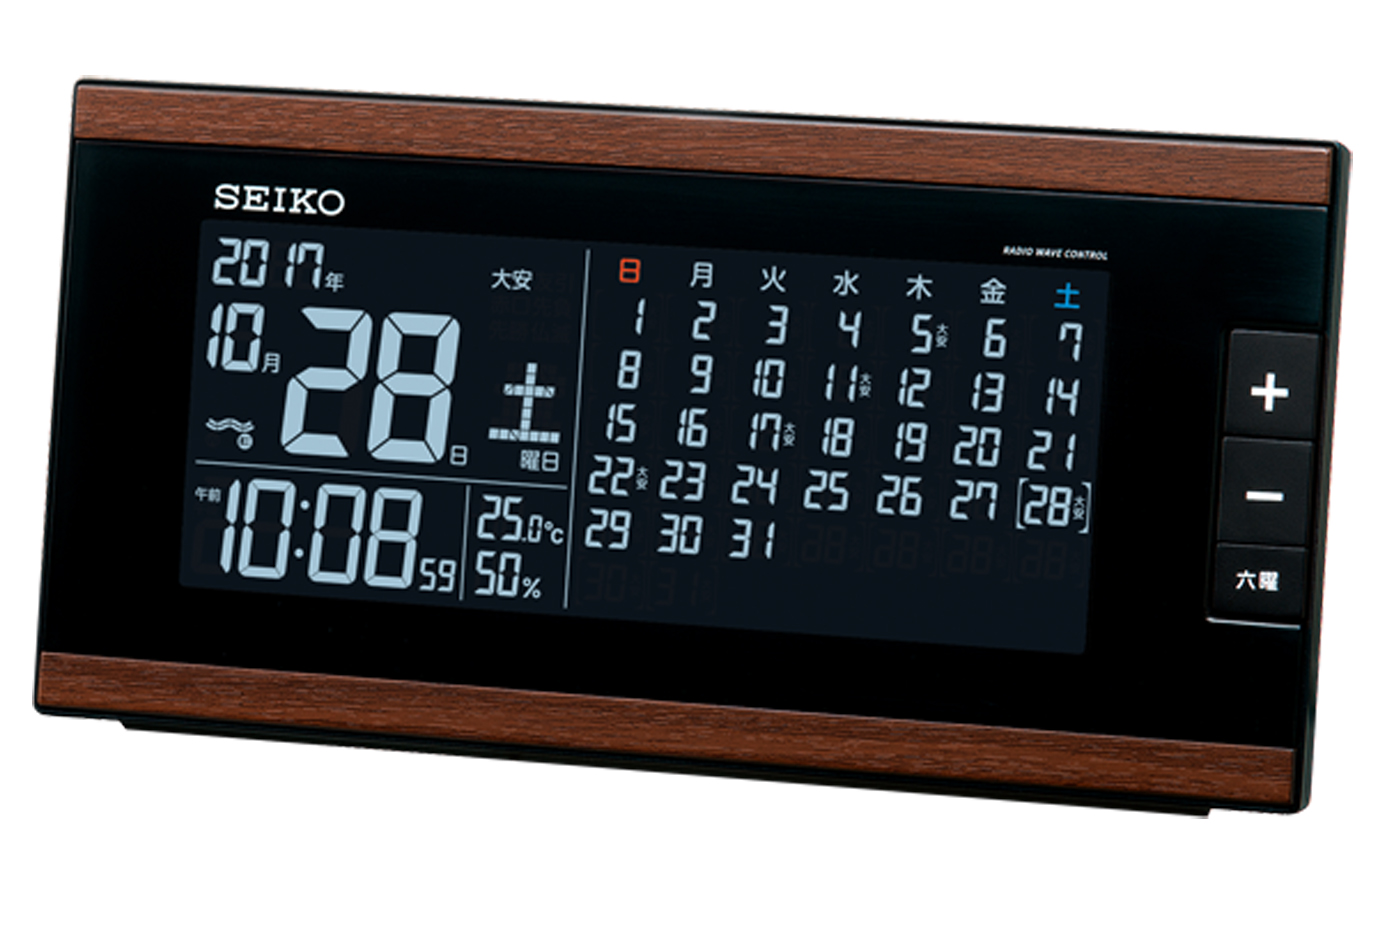 マンスリーカレンダー表示つきの交流式デジタル置時計を発売 セイコータイムクリエーション株式会社のプレスリリース